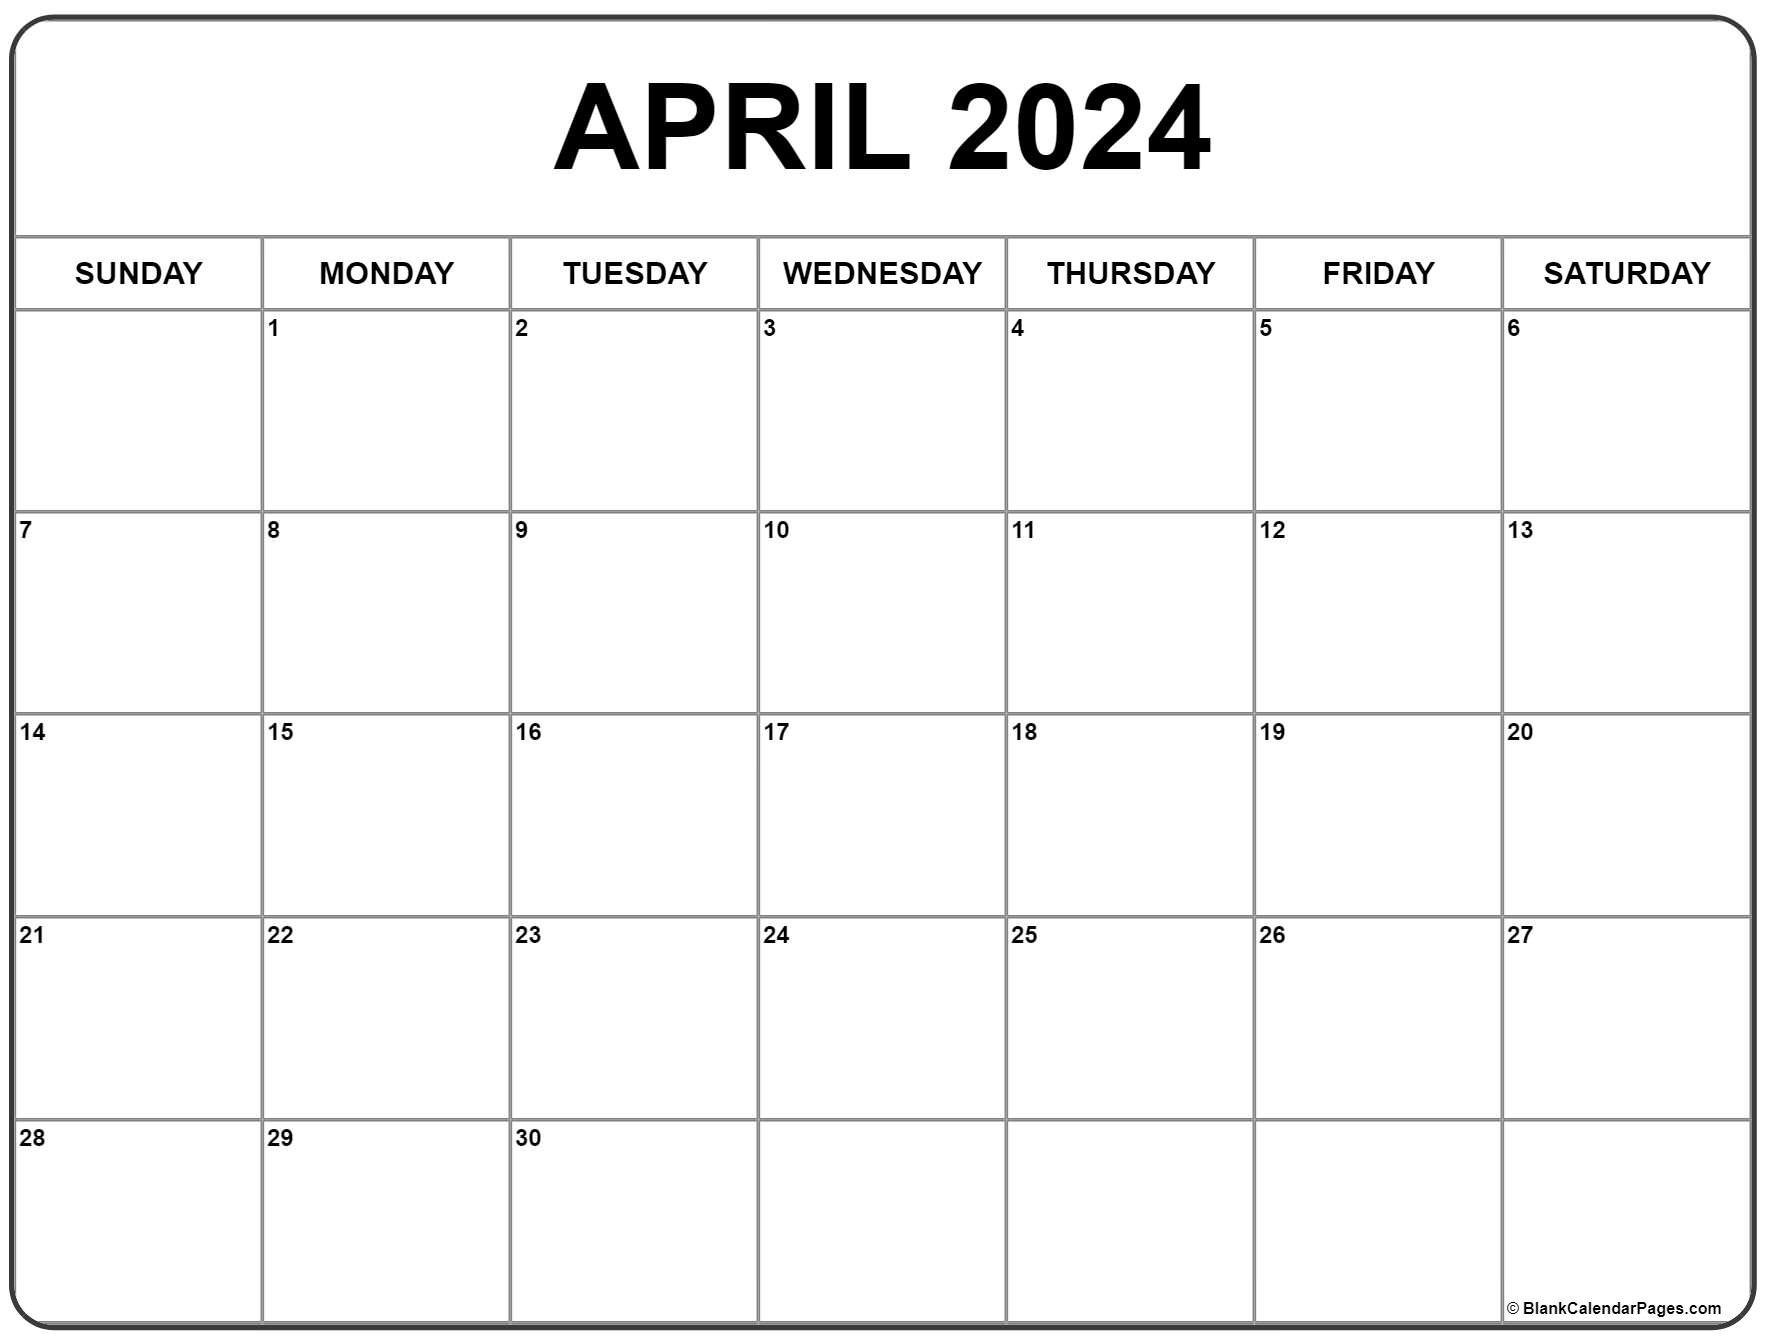 April 2024 Calendar | Free Printable Calendar for April 2024 Printable Calendar Free